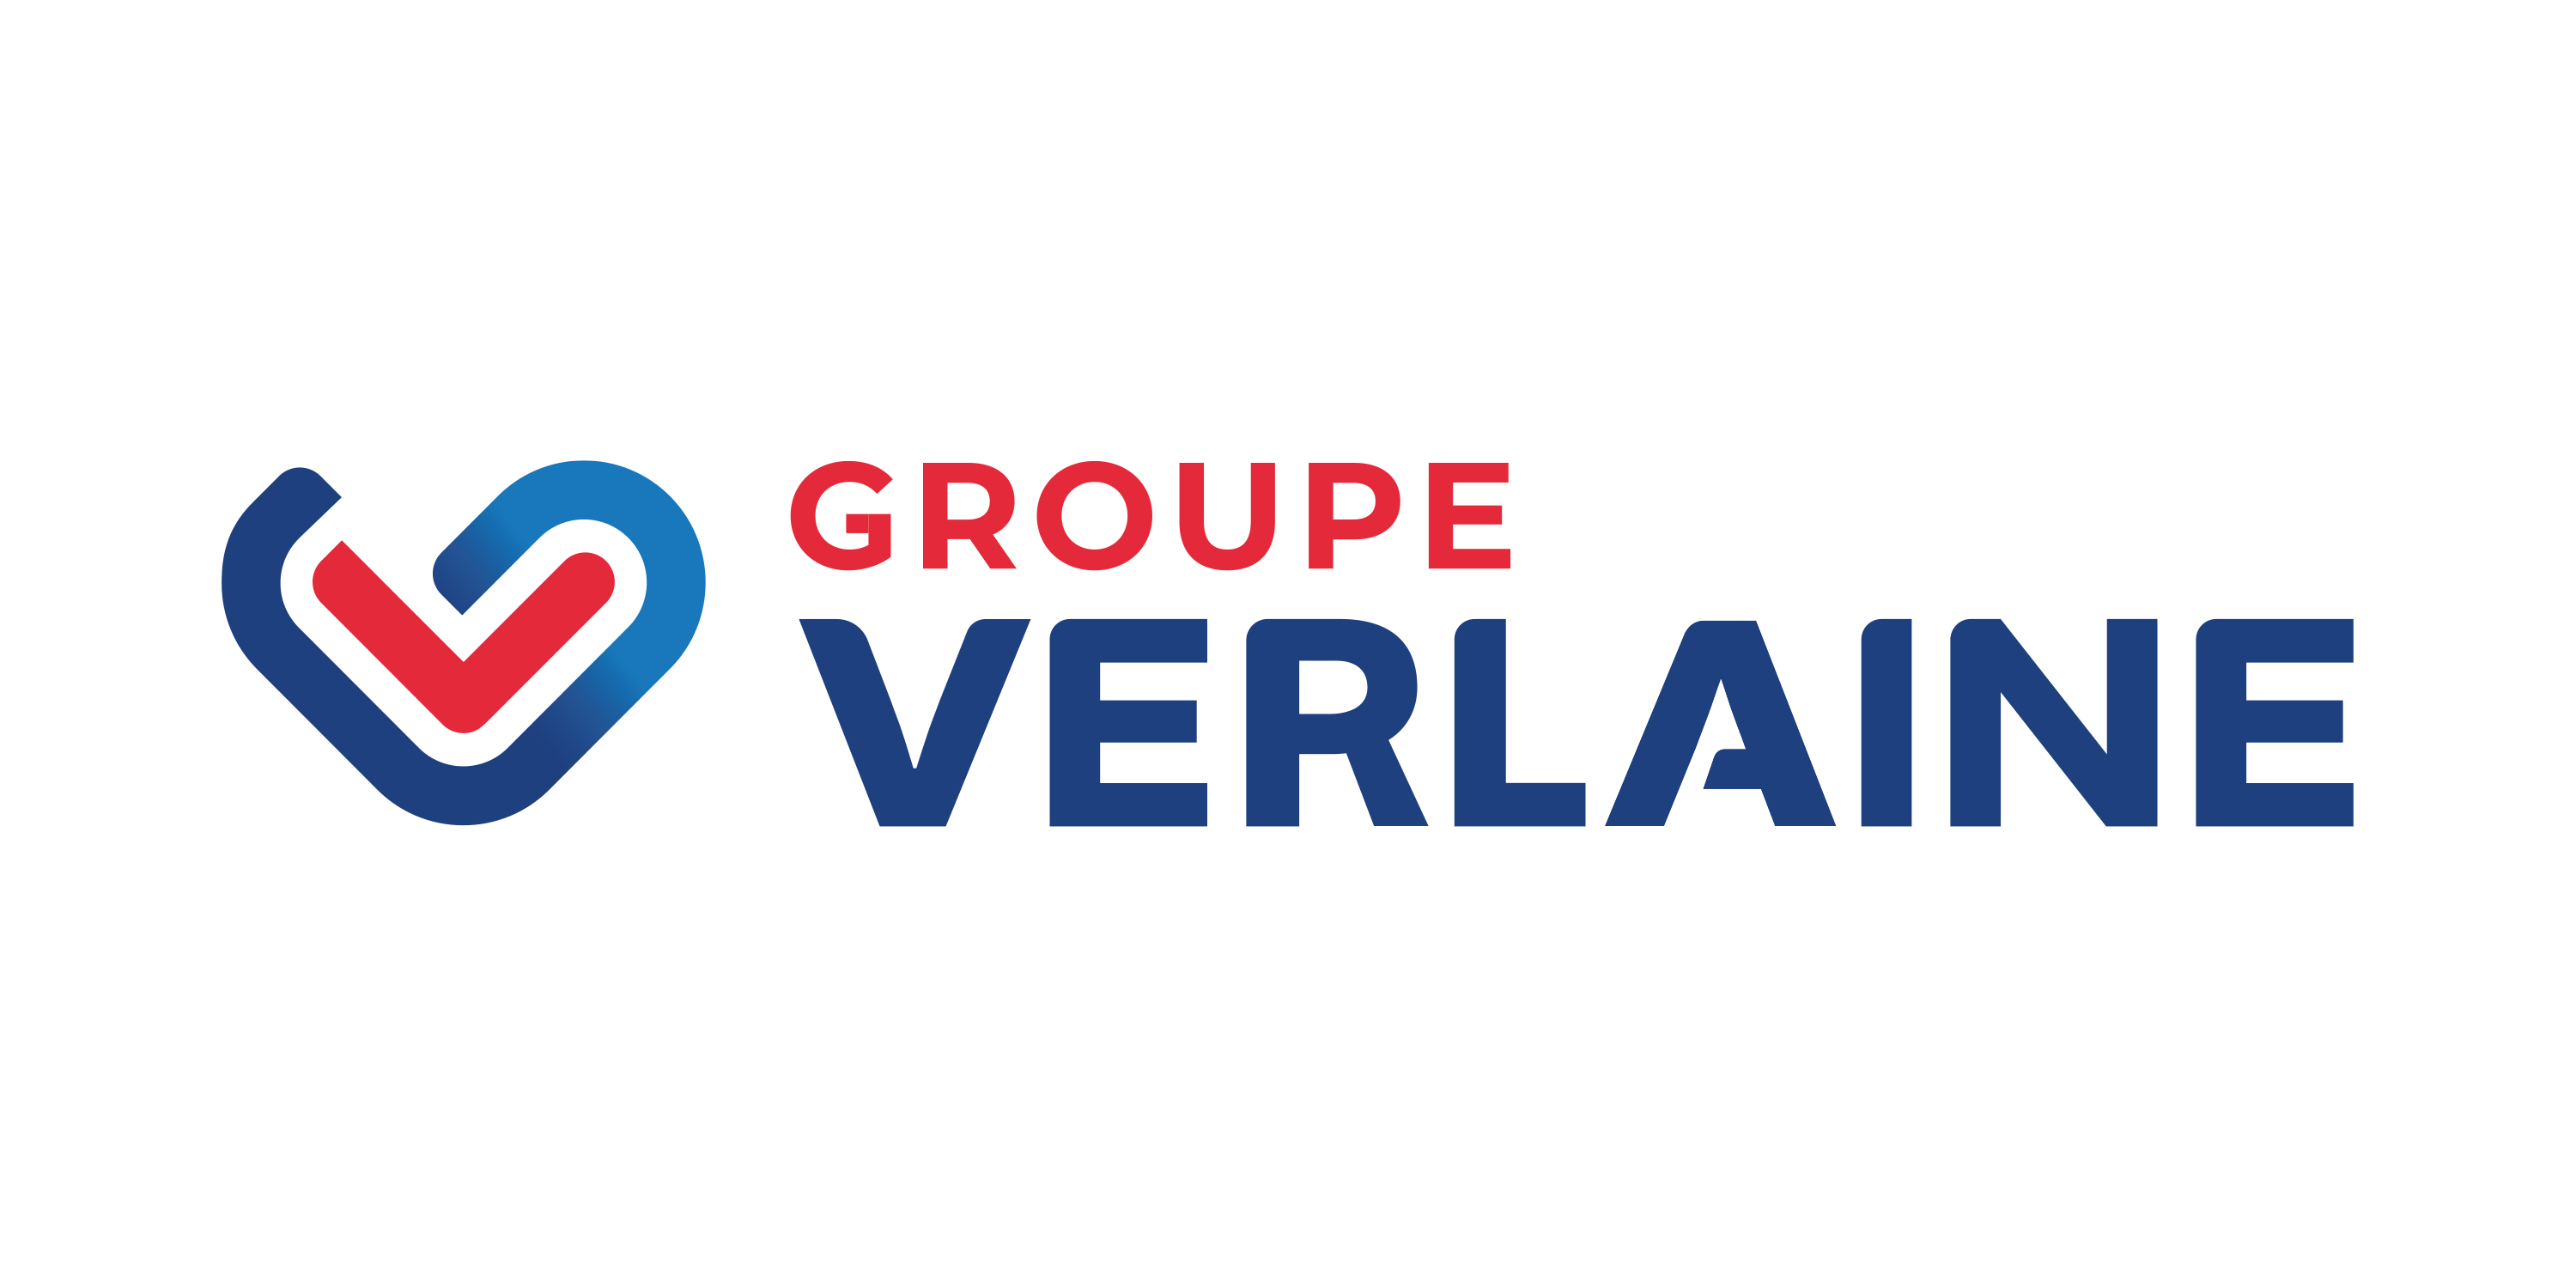 Groupe Verlaine